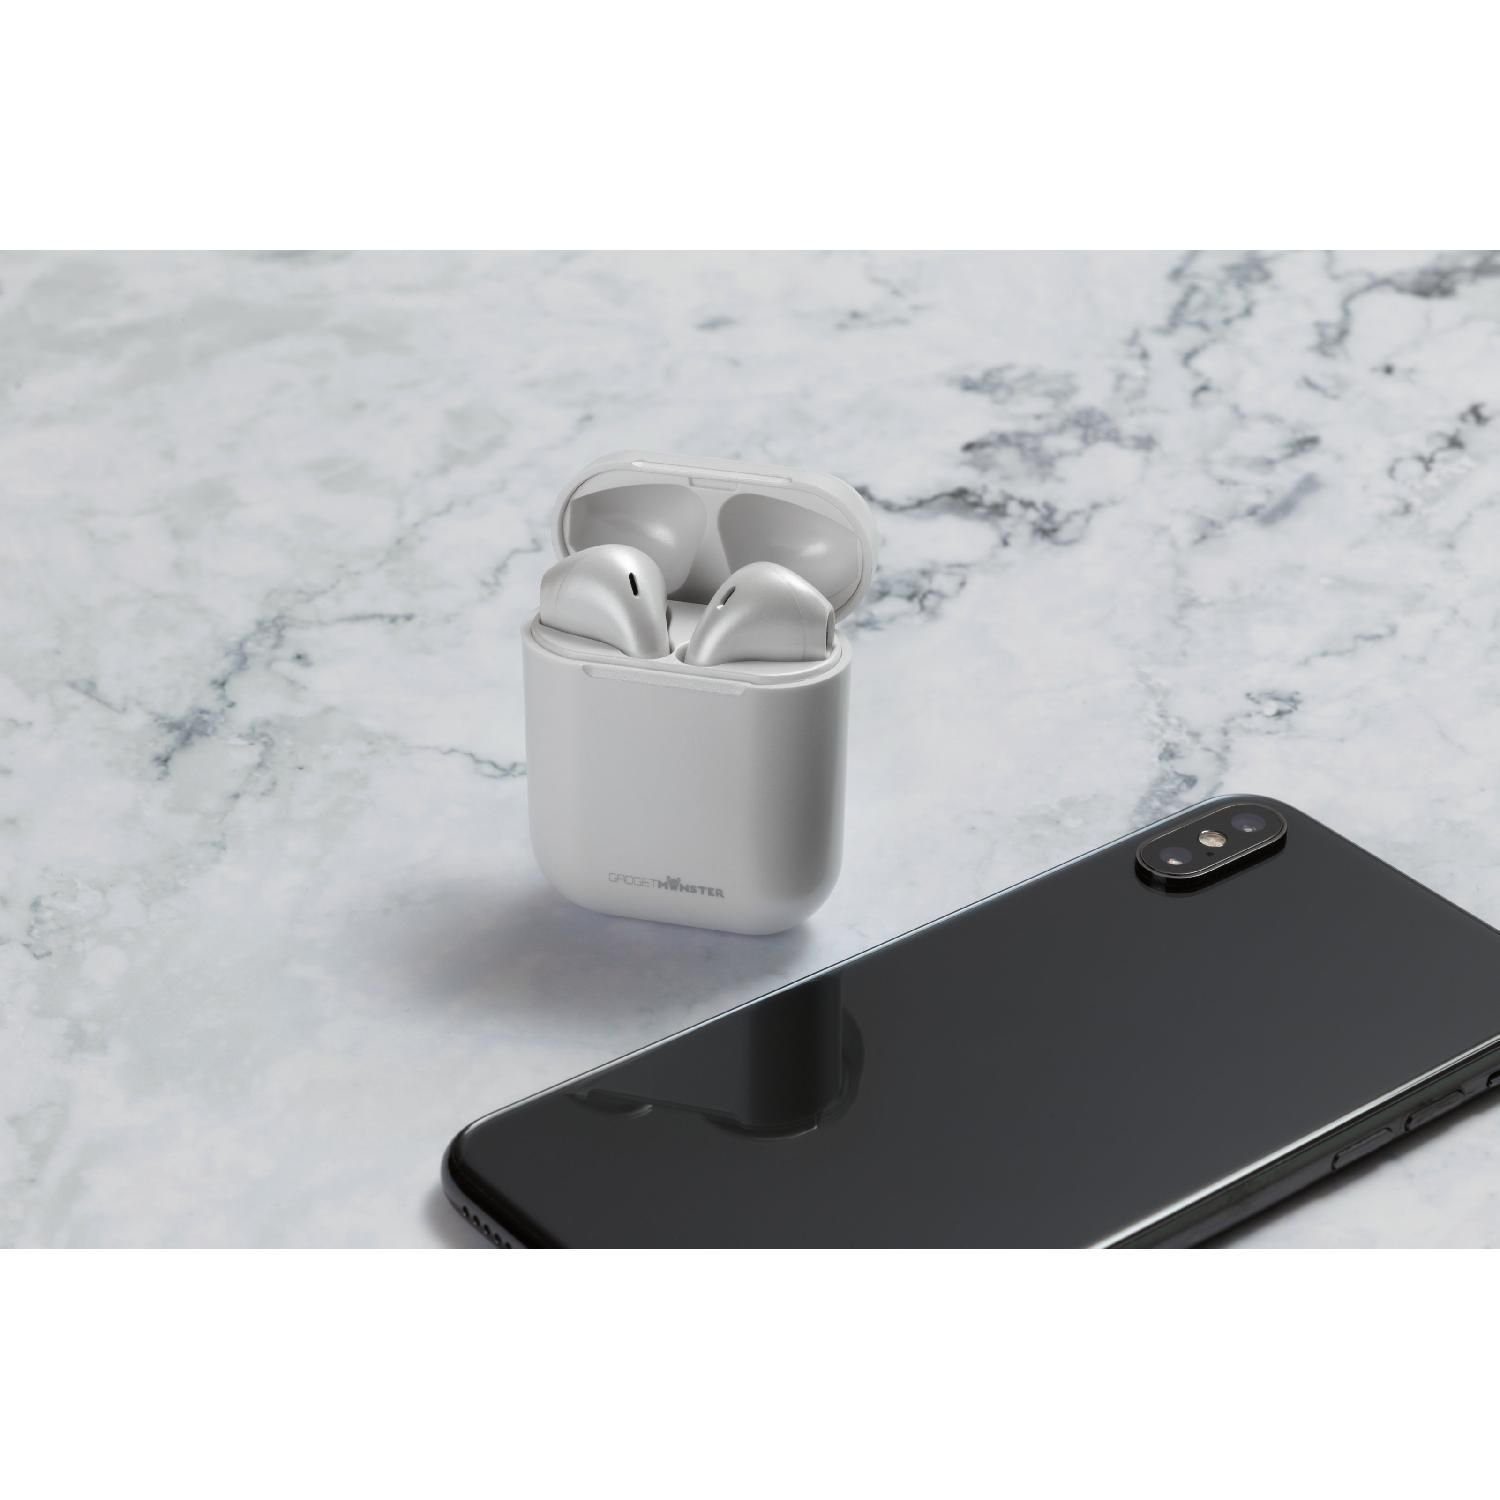 18 weiß 5 GadgetMonster Herstellergarantie) 10m Kopfhörer Kopfhörer bis Spielzeit zu In-Ear Std. TWS Bluetooth (inkl. Jahre